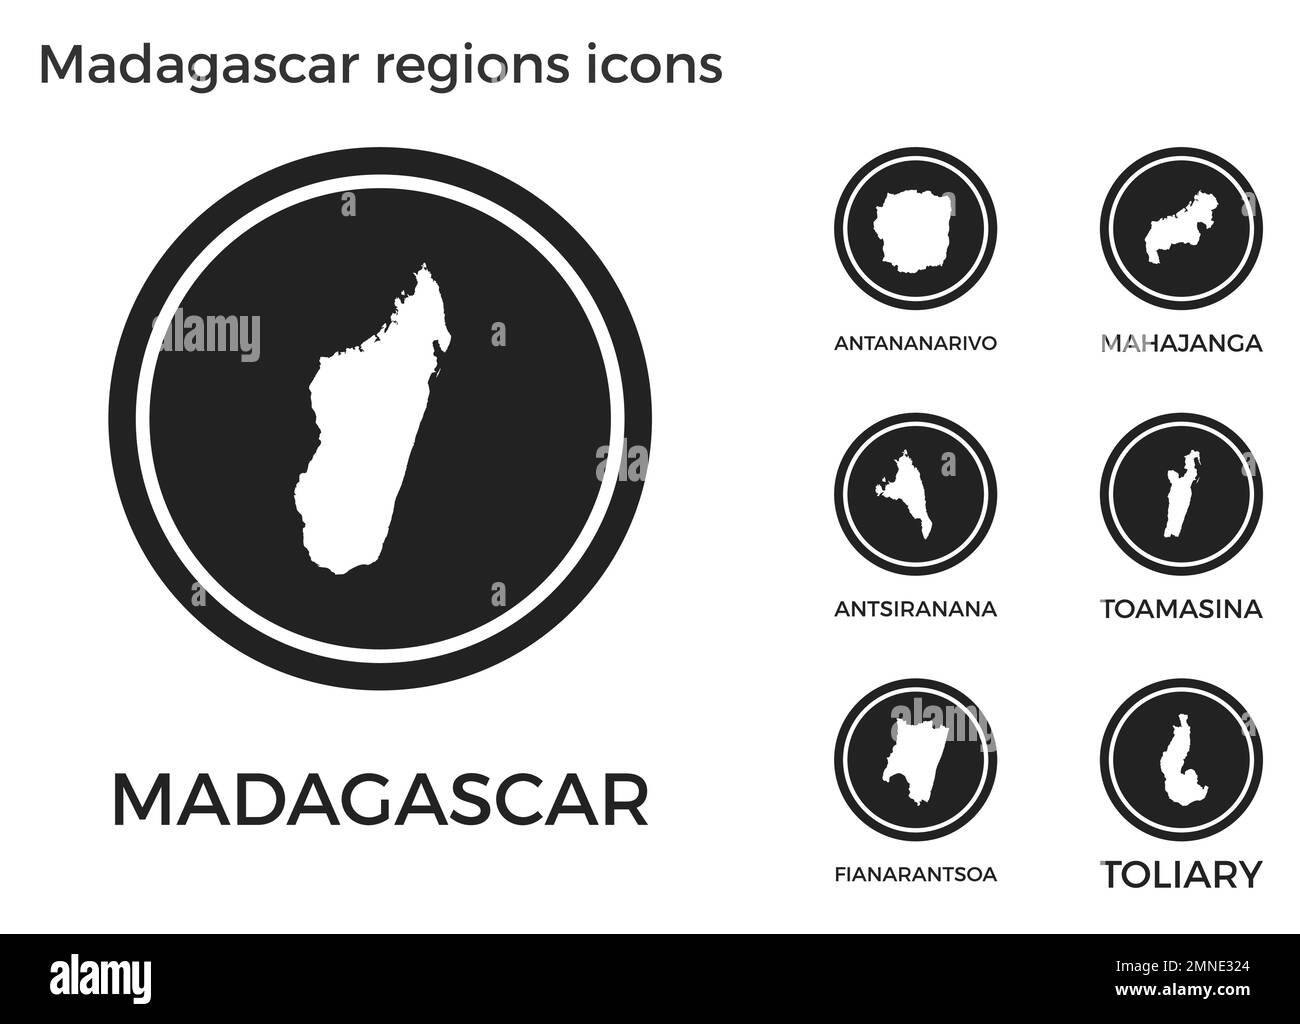 Symbole der Regionen Madagaskars. Schwarze runde Logos mit Karten und Titeln der jeweiligen Region. Vektordarstellung. Stock Vektor